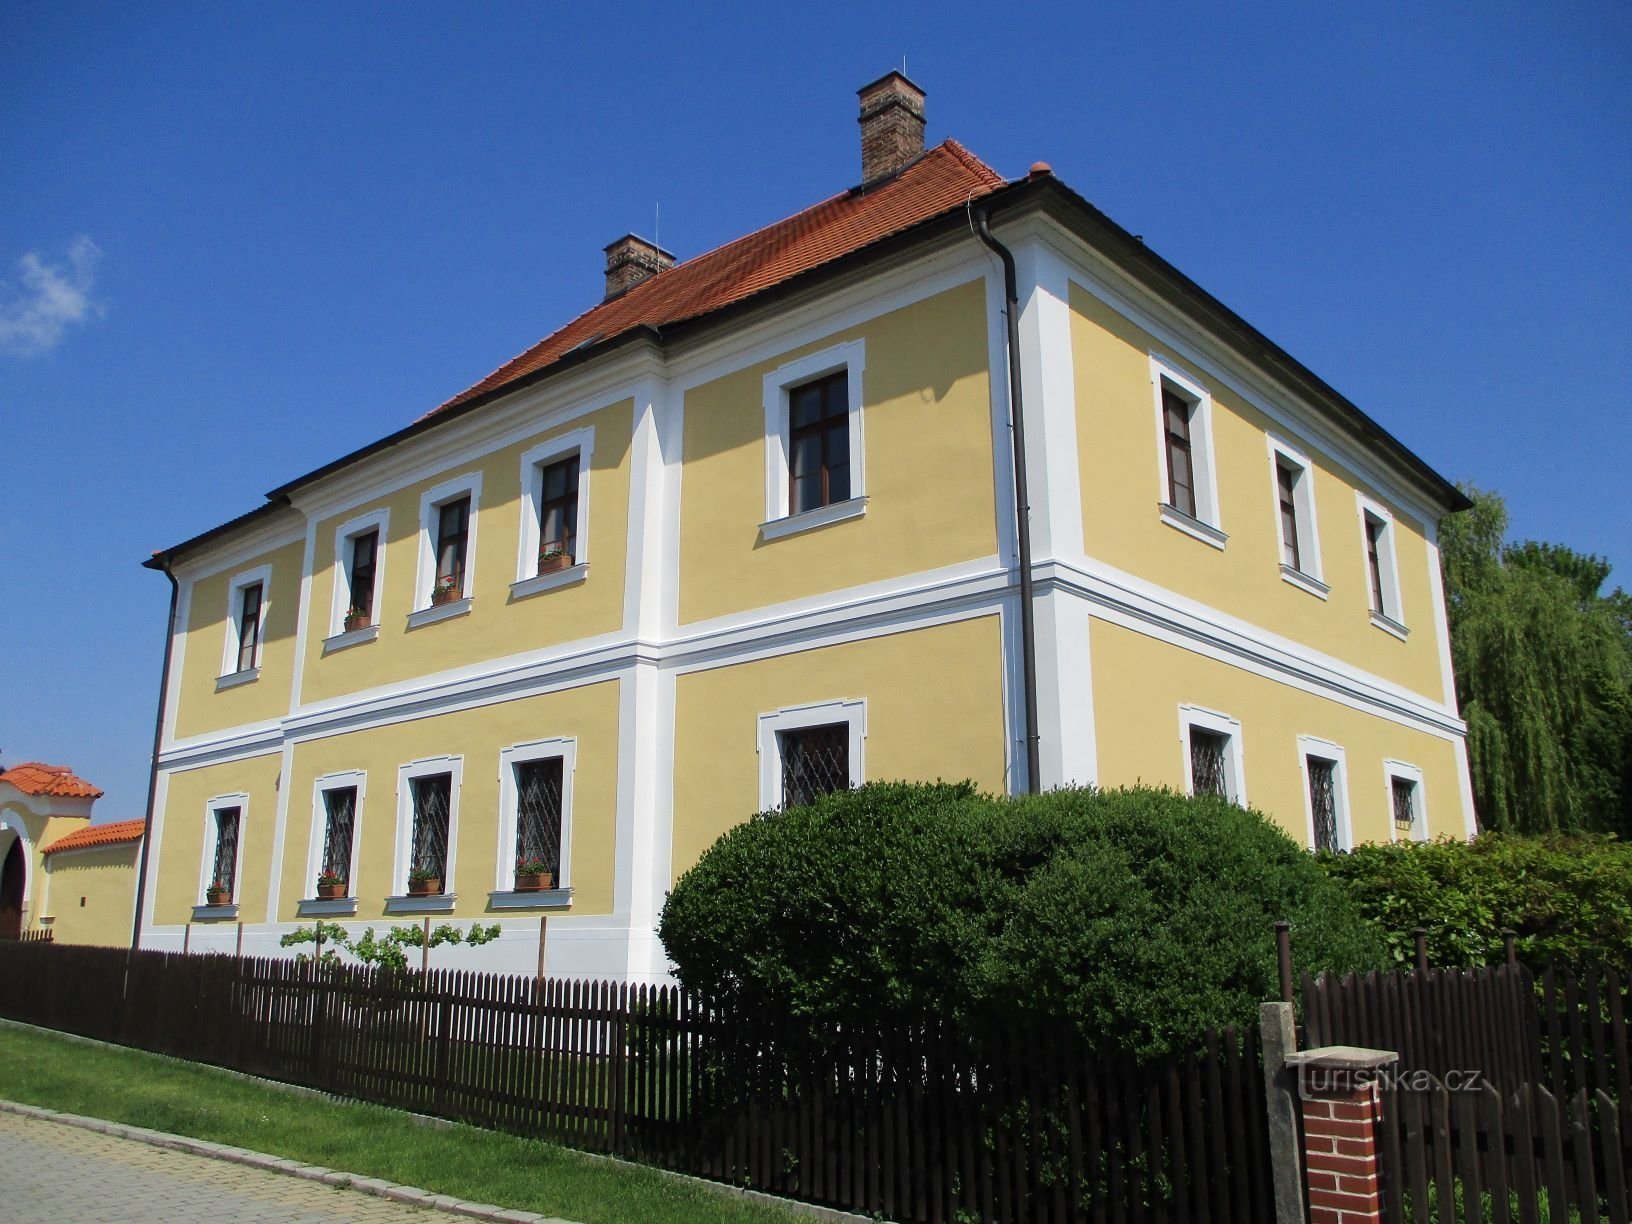 Fost rectorat (Dašice, 16.5.2020)